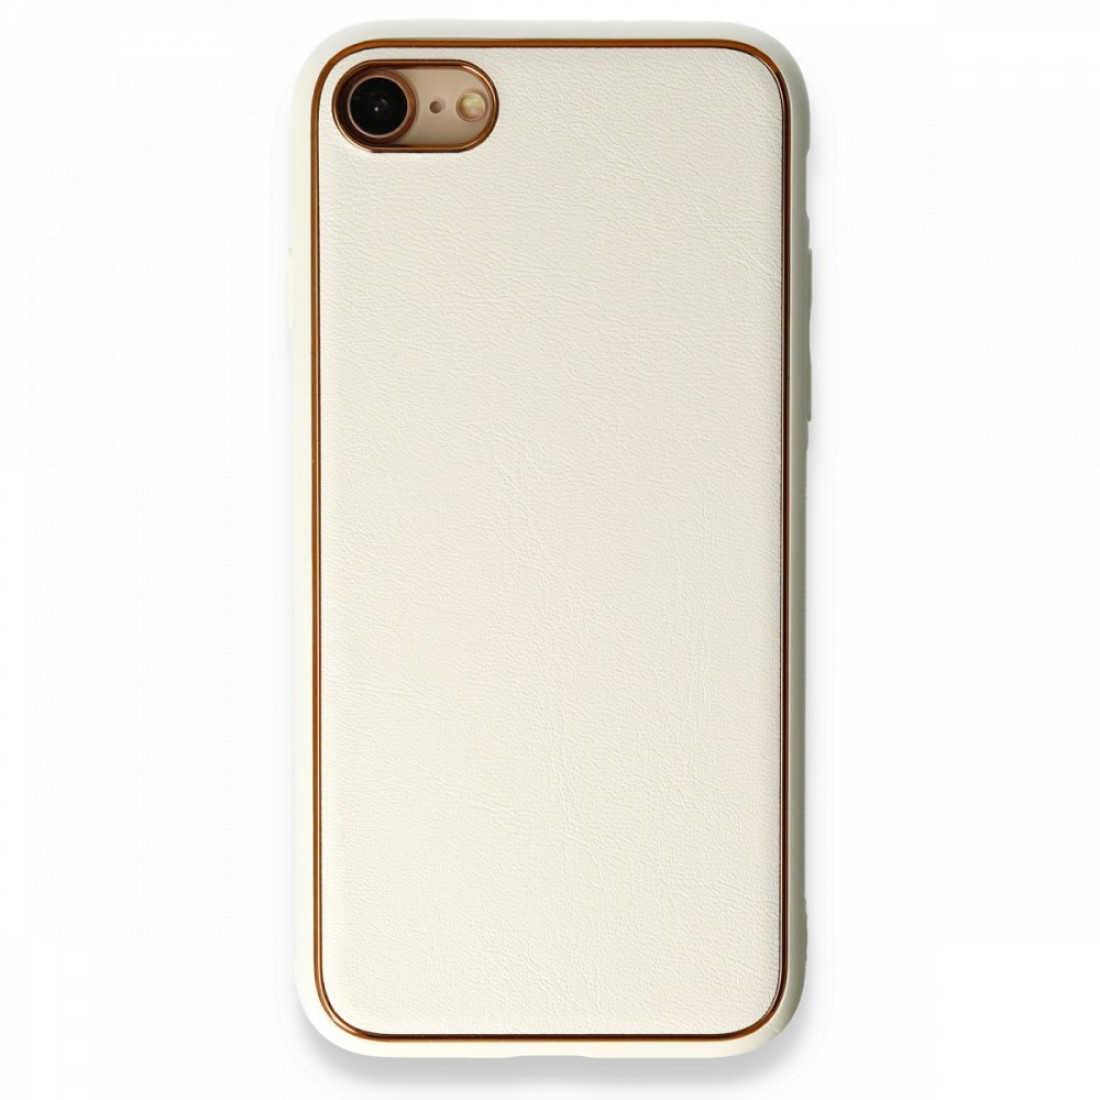 Apple iPhone 7 Kılıf Coco Deri Silikon Kapak - Beyaz